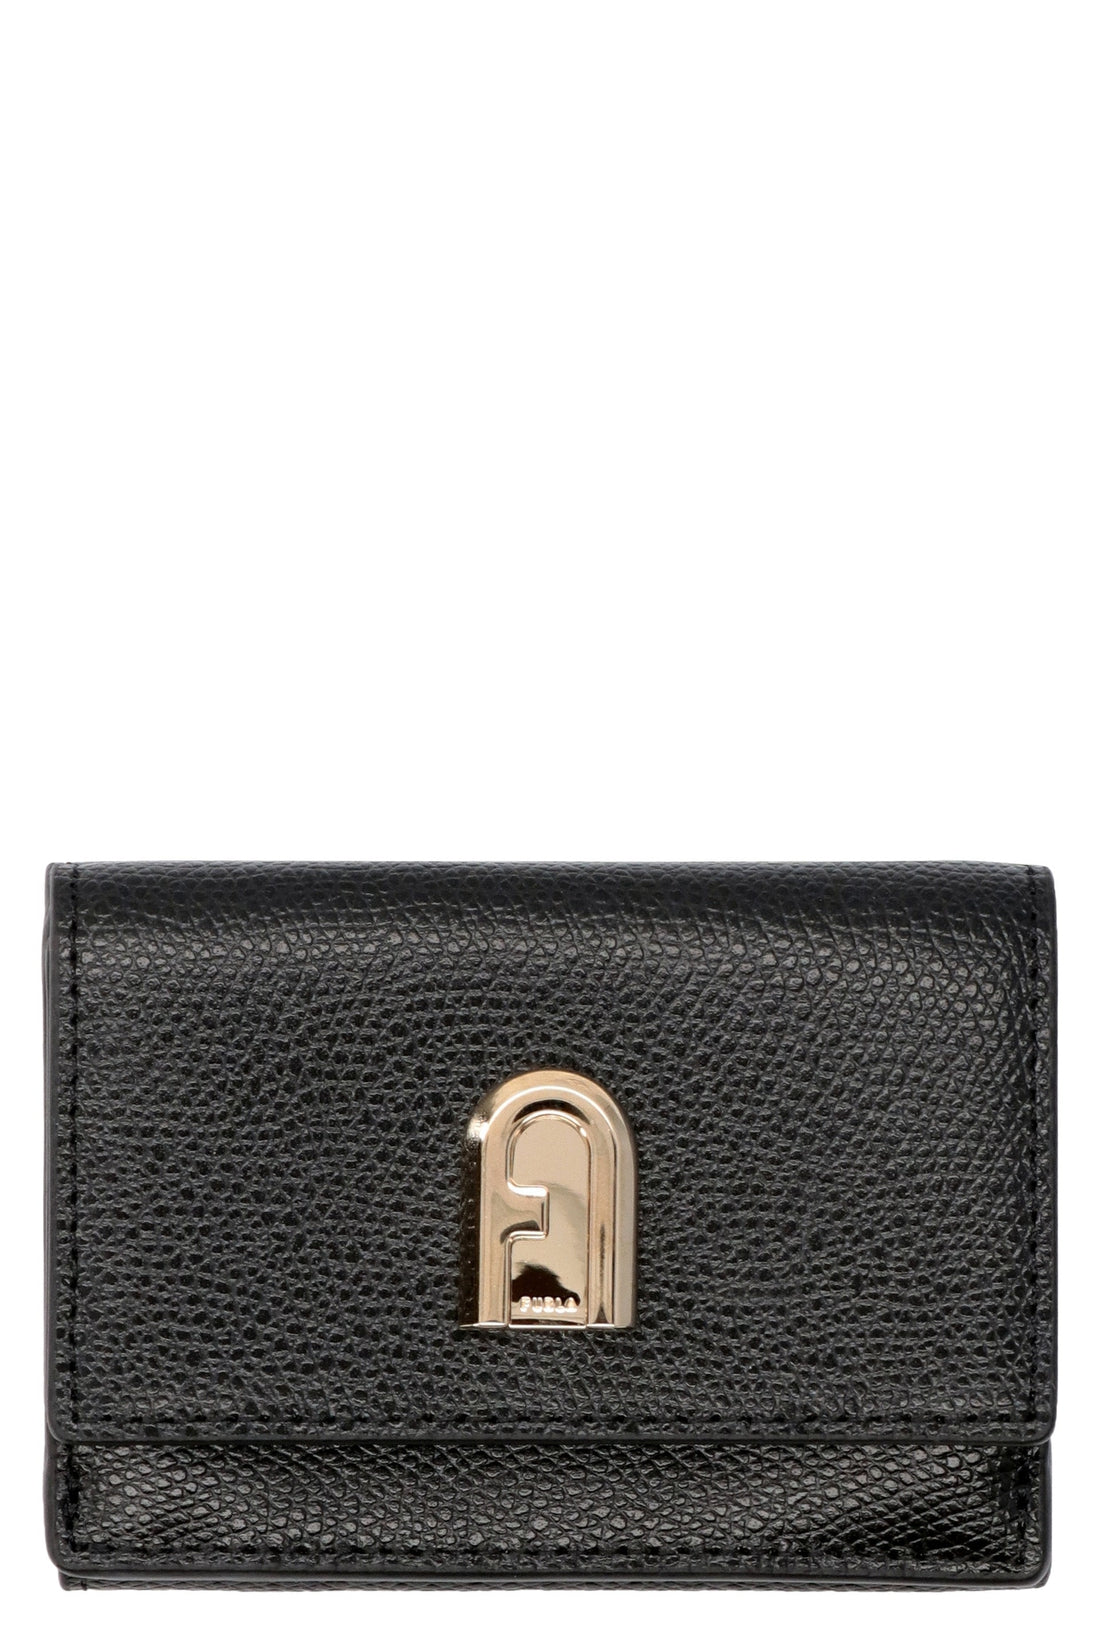 Furla-OUTLET-SALE-Leather wallet-ARCHIVIST